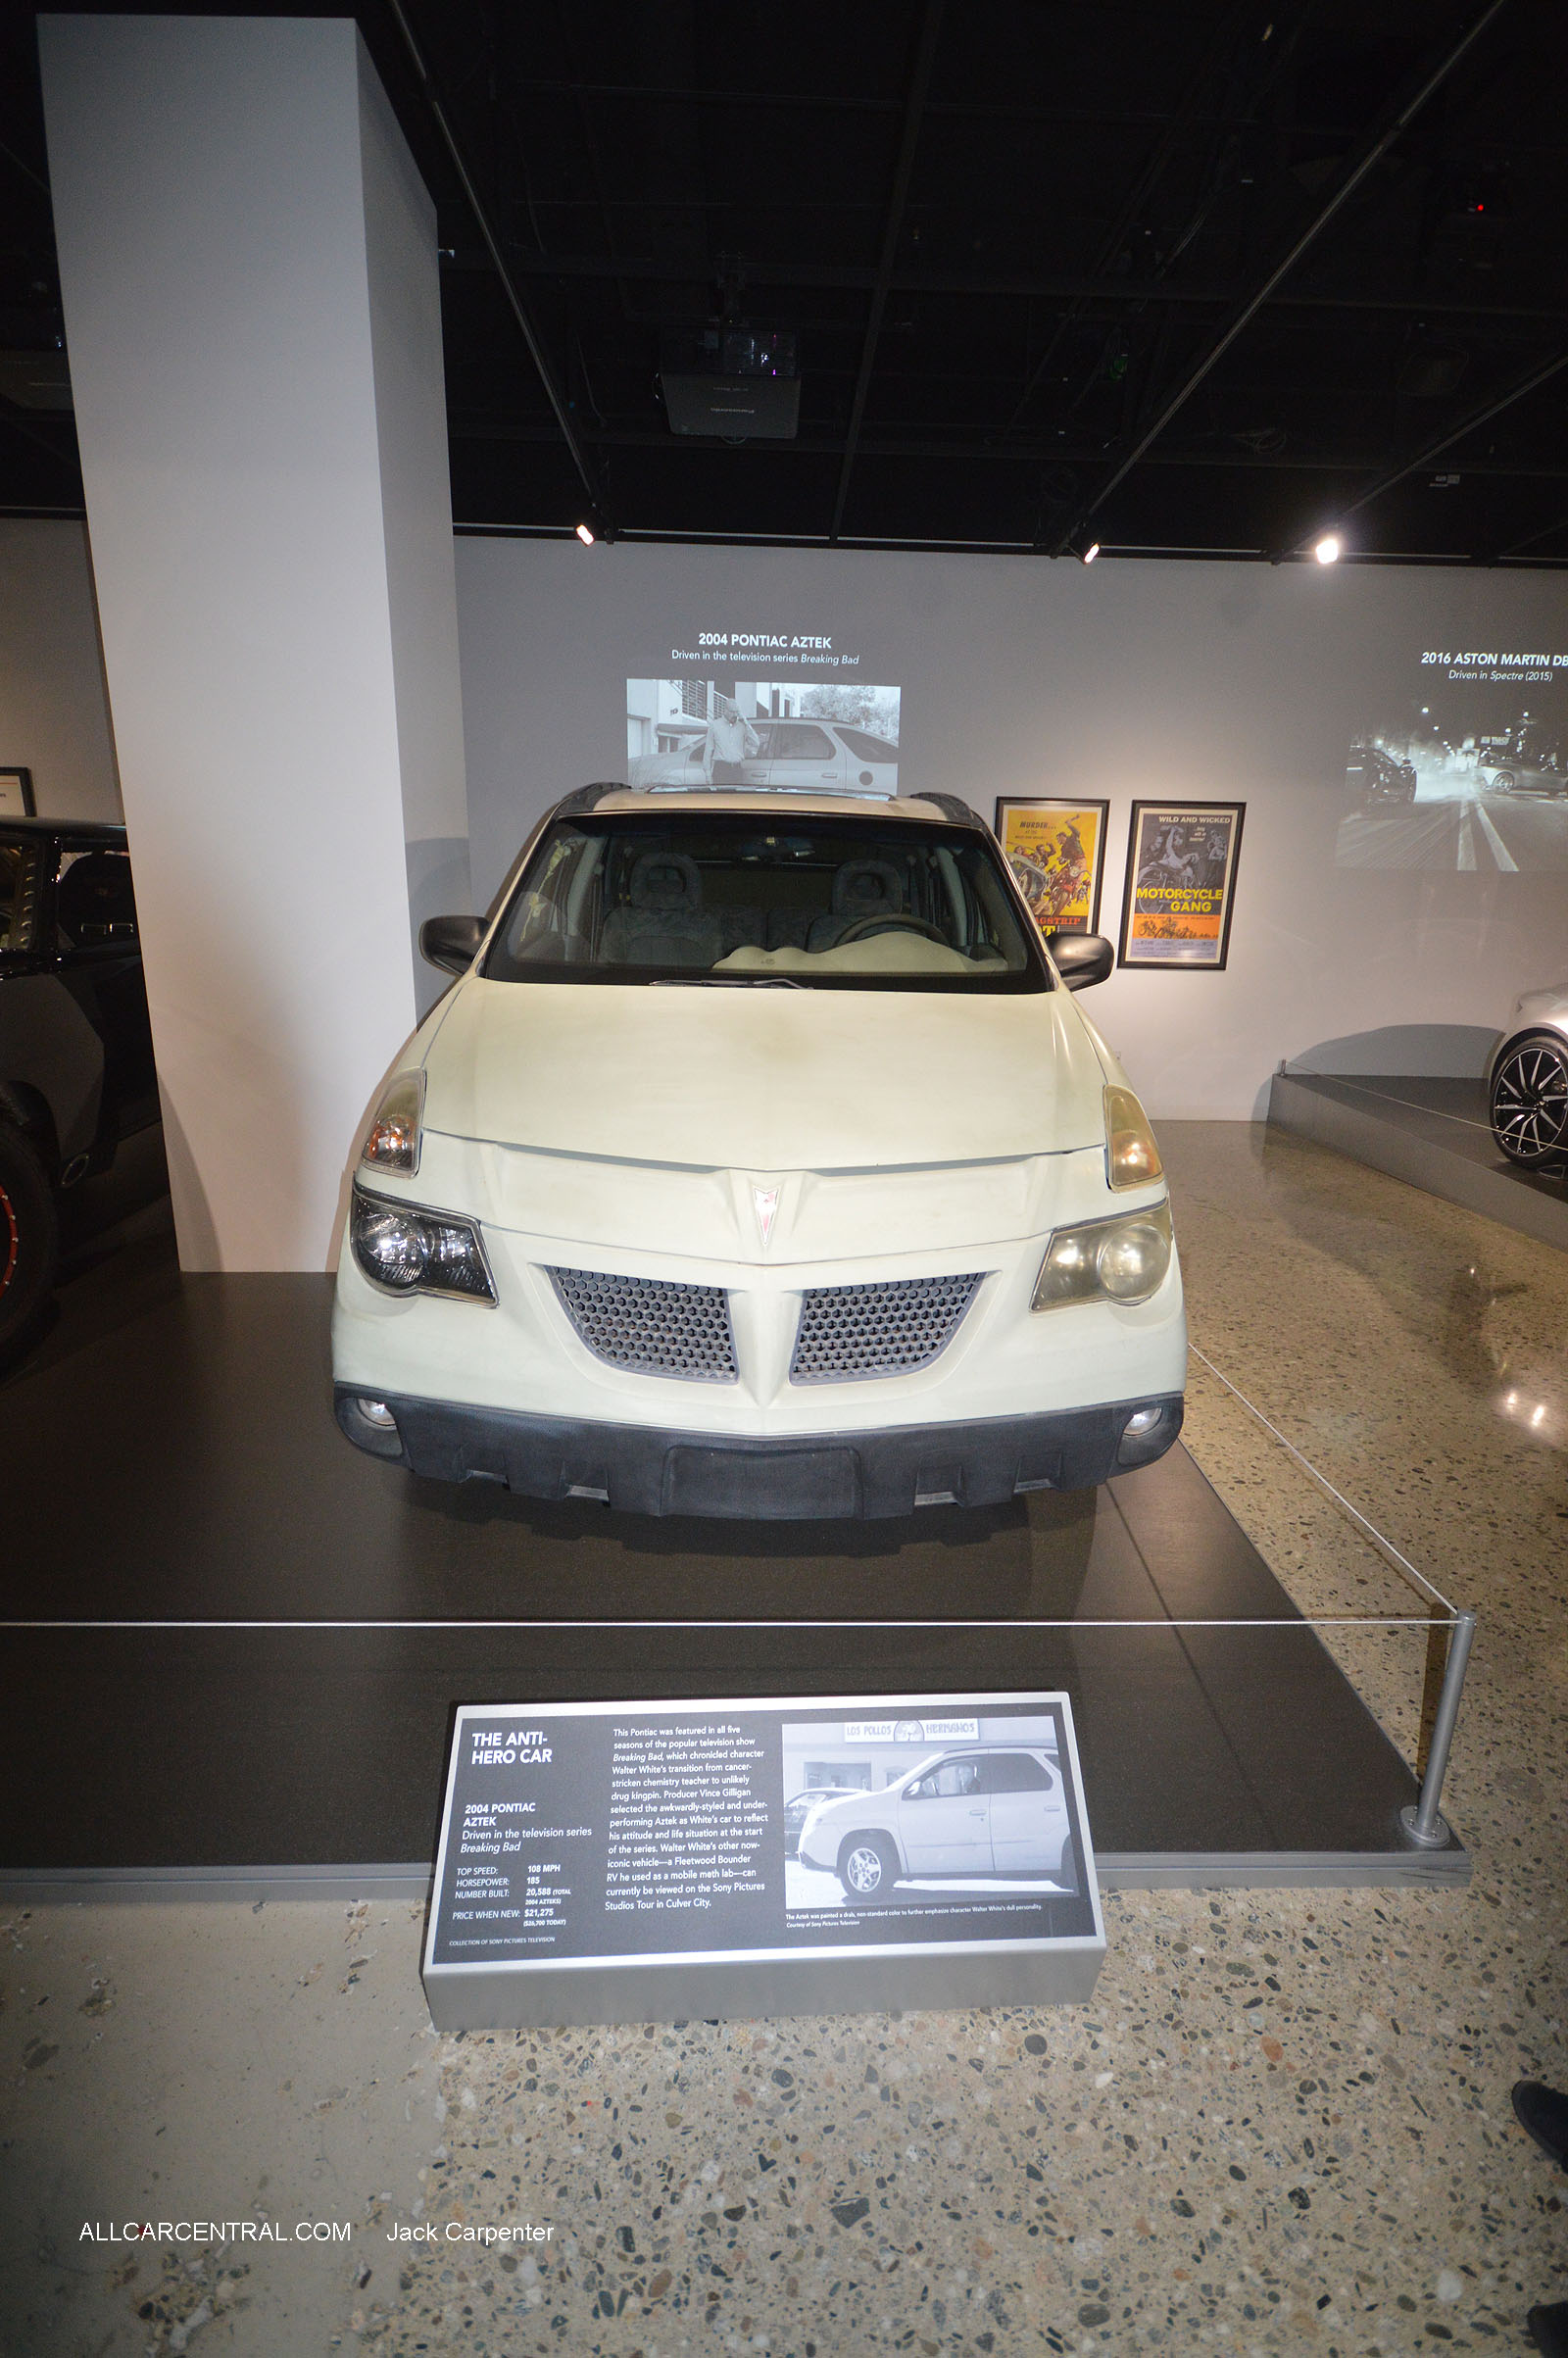   
Pontiac Aztek 2004  Petersen Automotive Museum 
2016